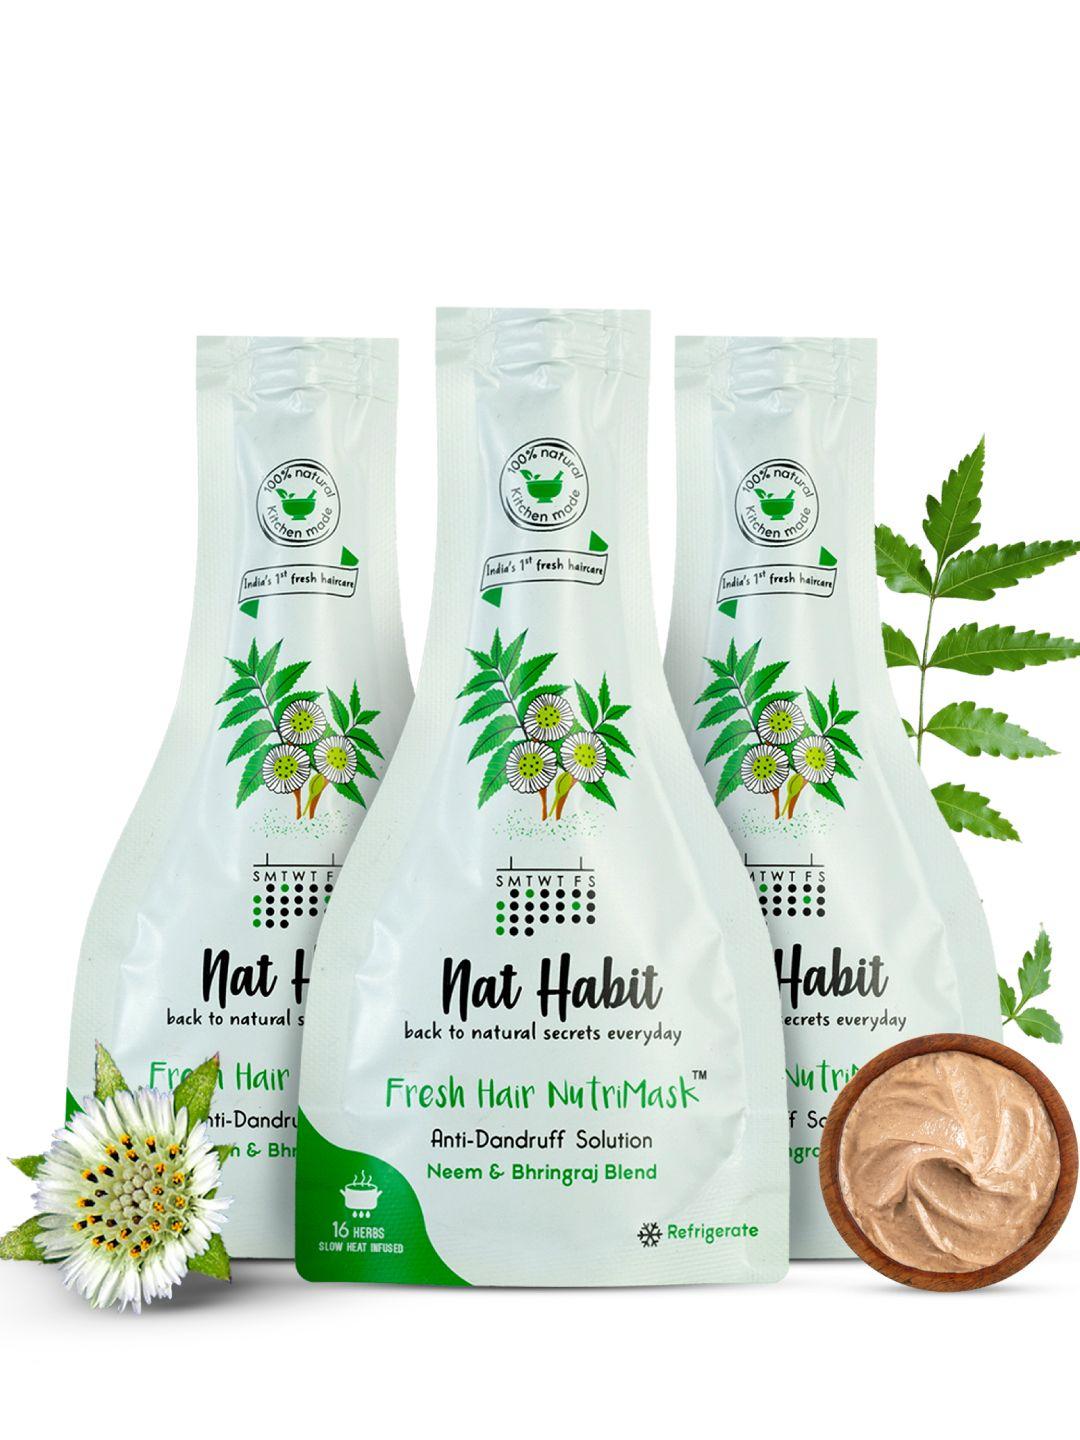 nat habit set of 3 neem & bhringraj blend hair nutrimask for anti-dandruff - 40g each